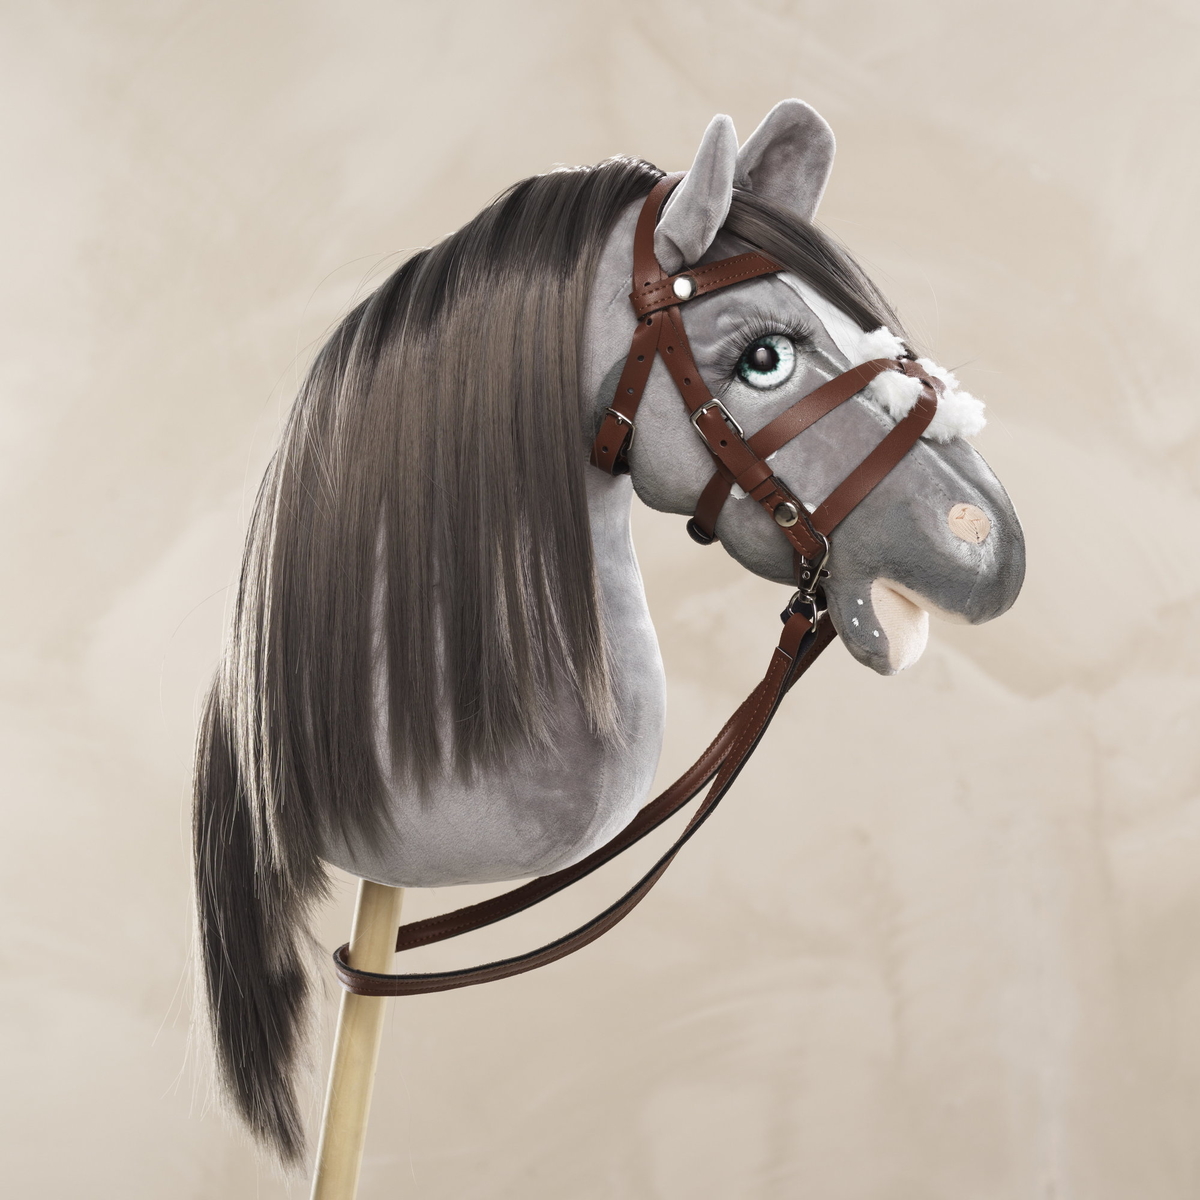 Veiledning: lag en Welsh pony-kjepphest